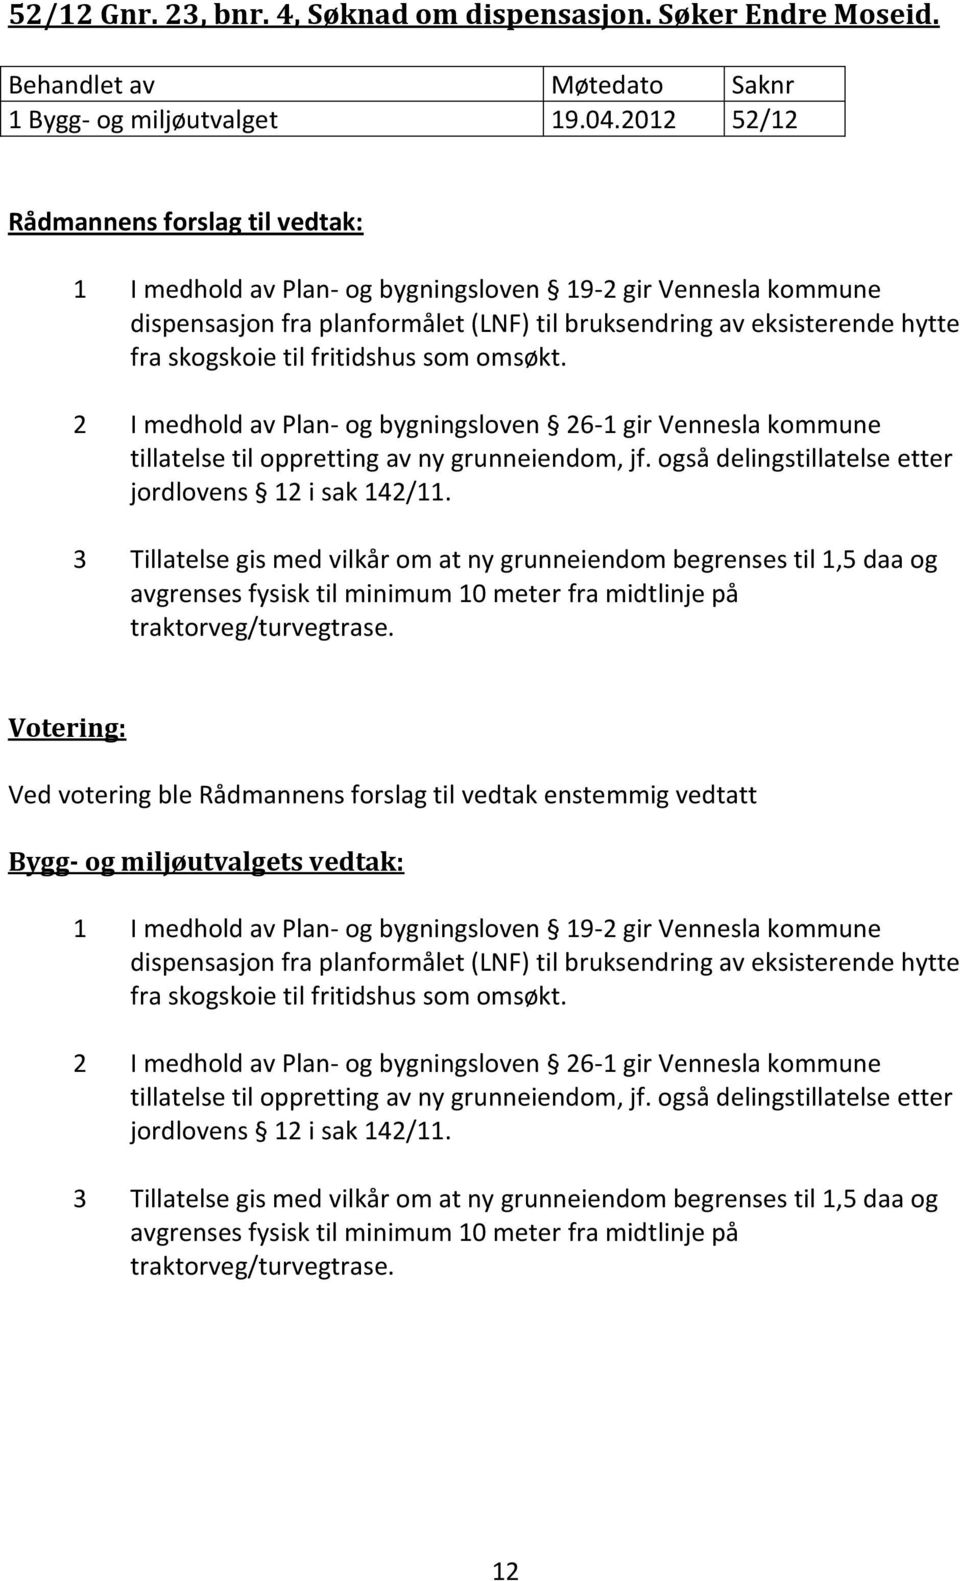 2 I medhold av Plan- og bygningsloven 26-1 gir Vennesla kommune tillatelse til oppretting av ny grunneiendom, jf. også delingstillatelse etter jordlovens 12 i sak 142/11.